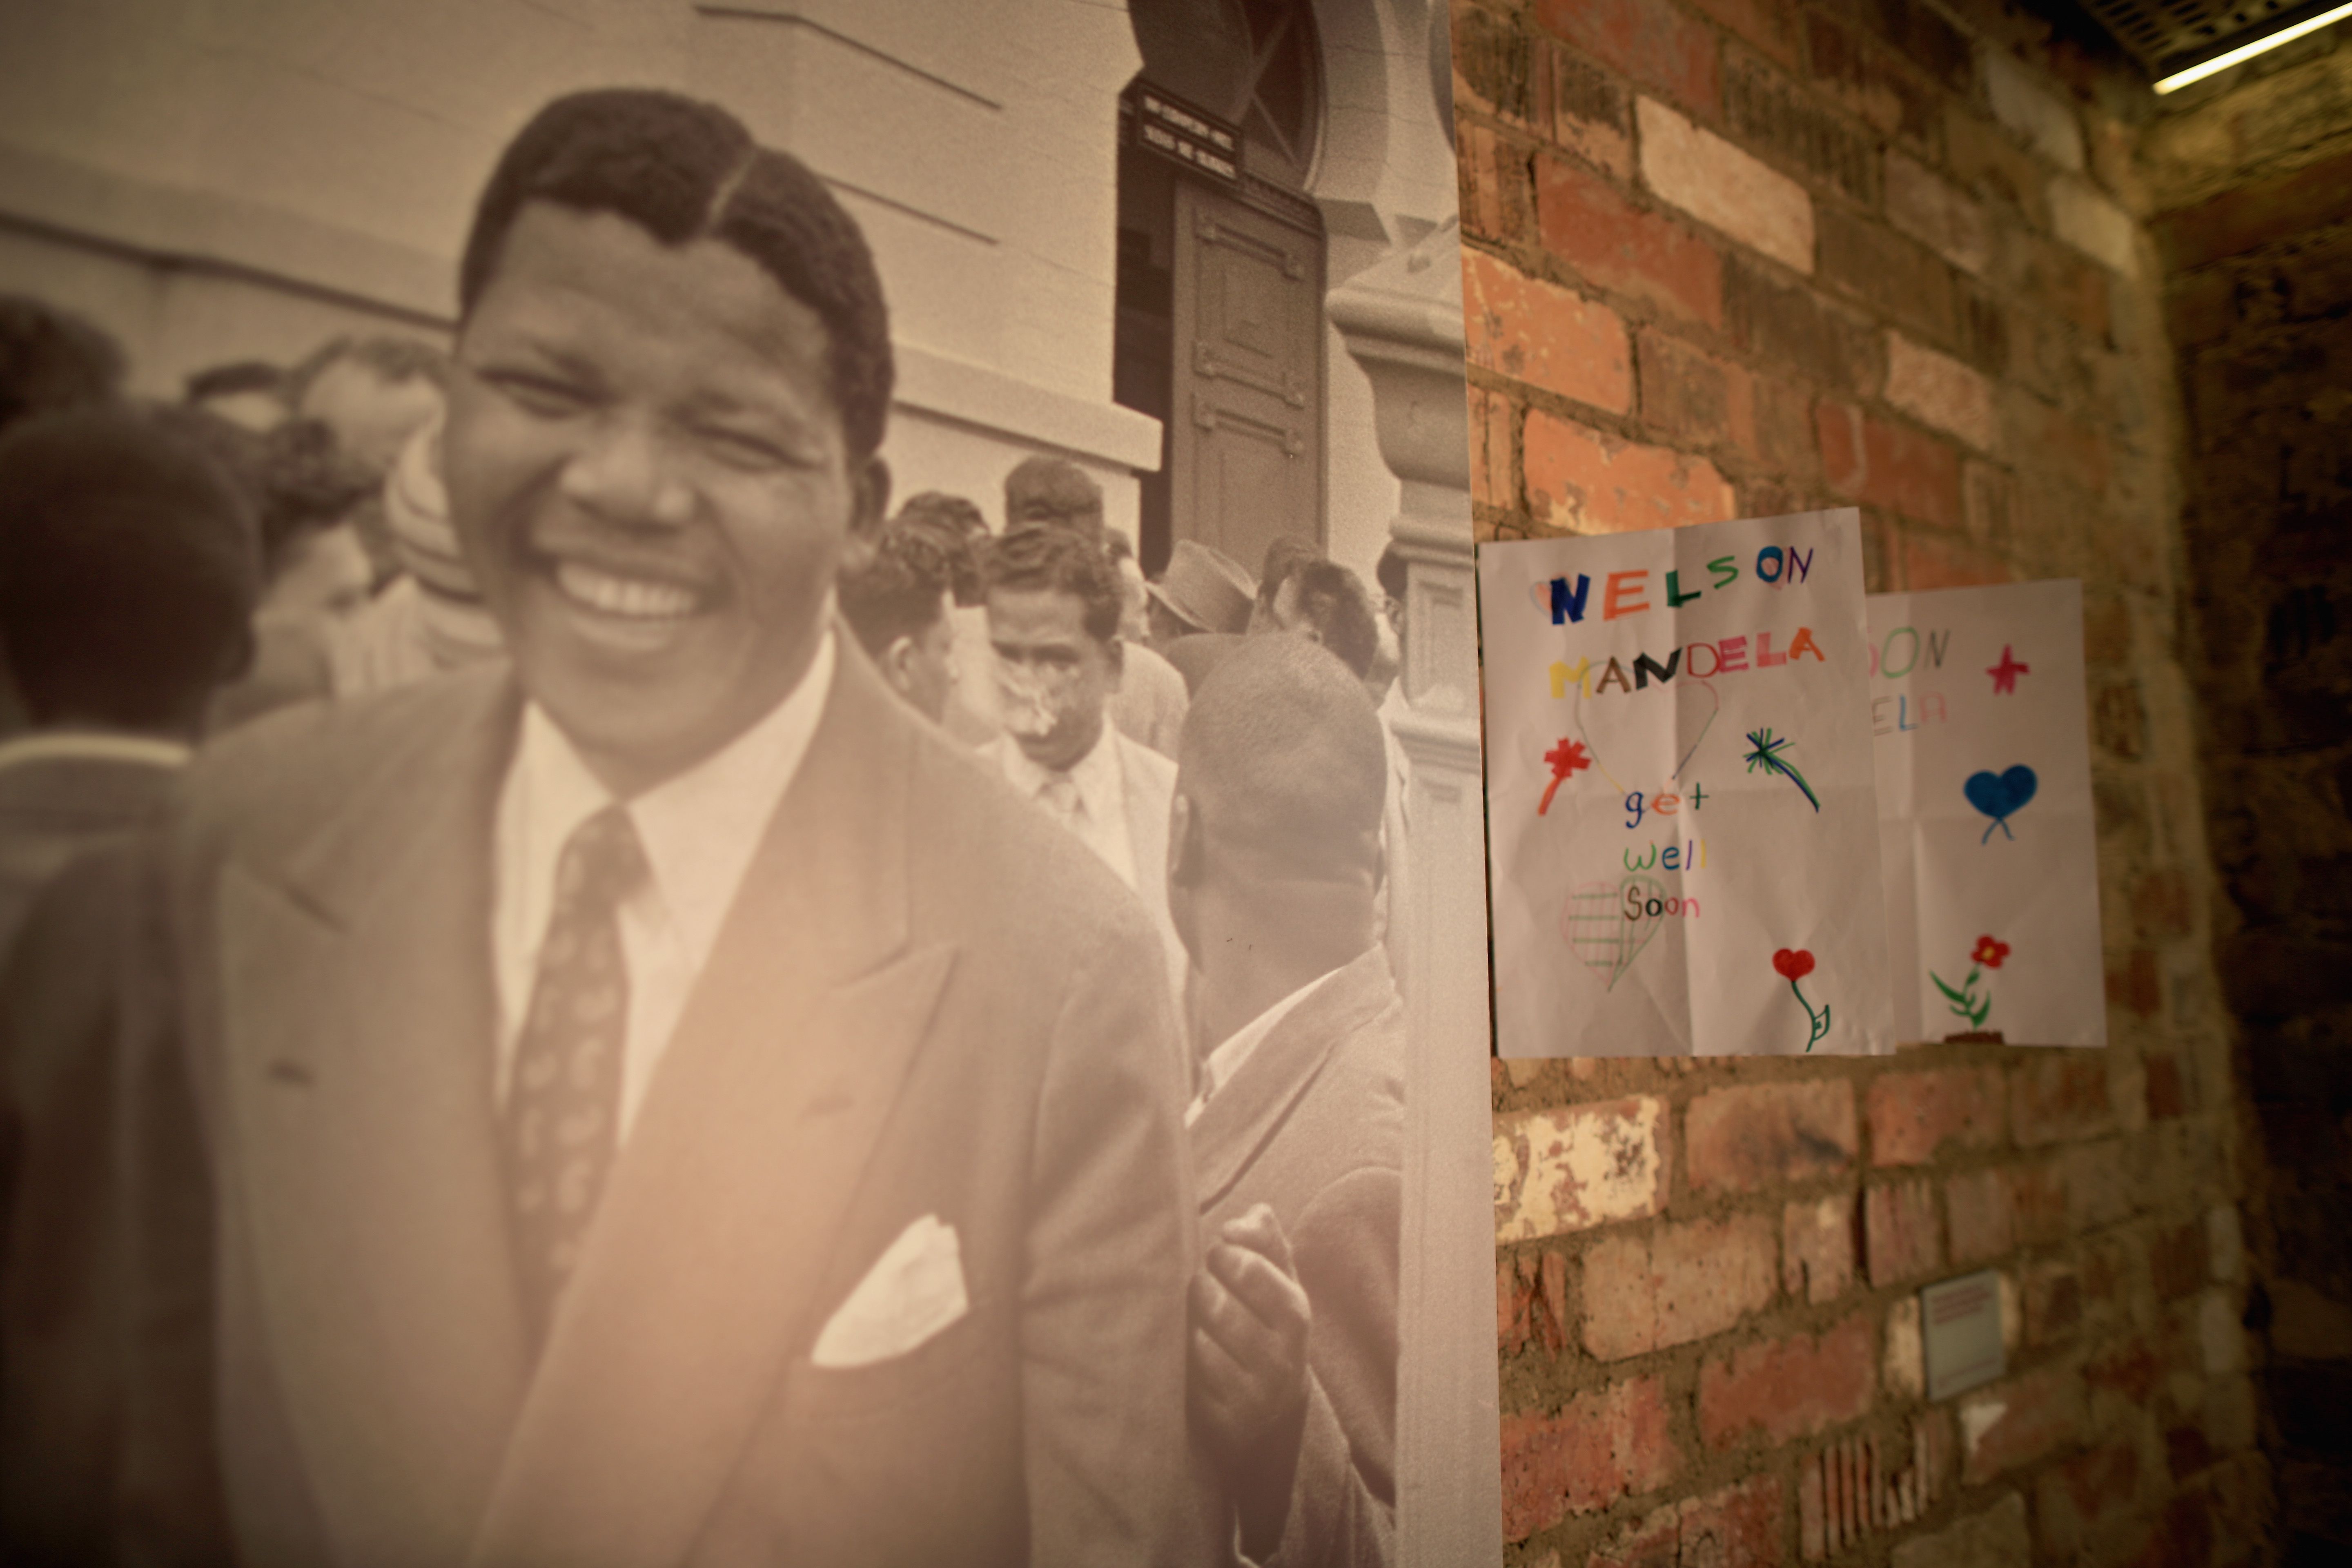 "Готов са да умра за идеала си", казваше усмихнатото лице на свободата Нелсън Мандела